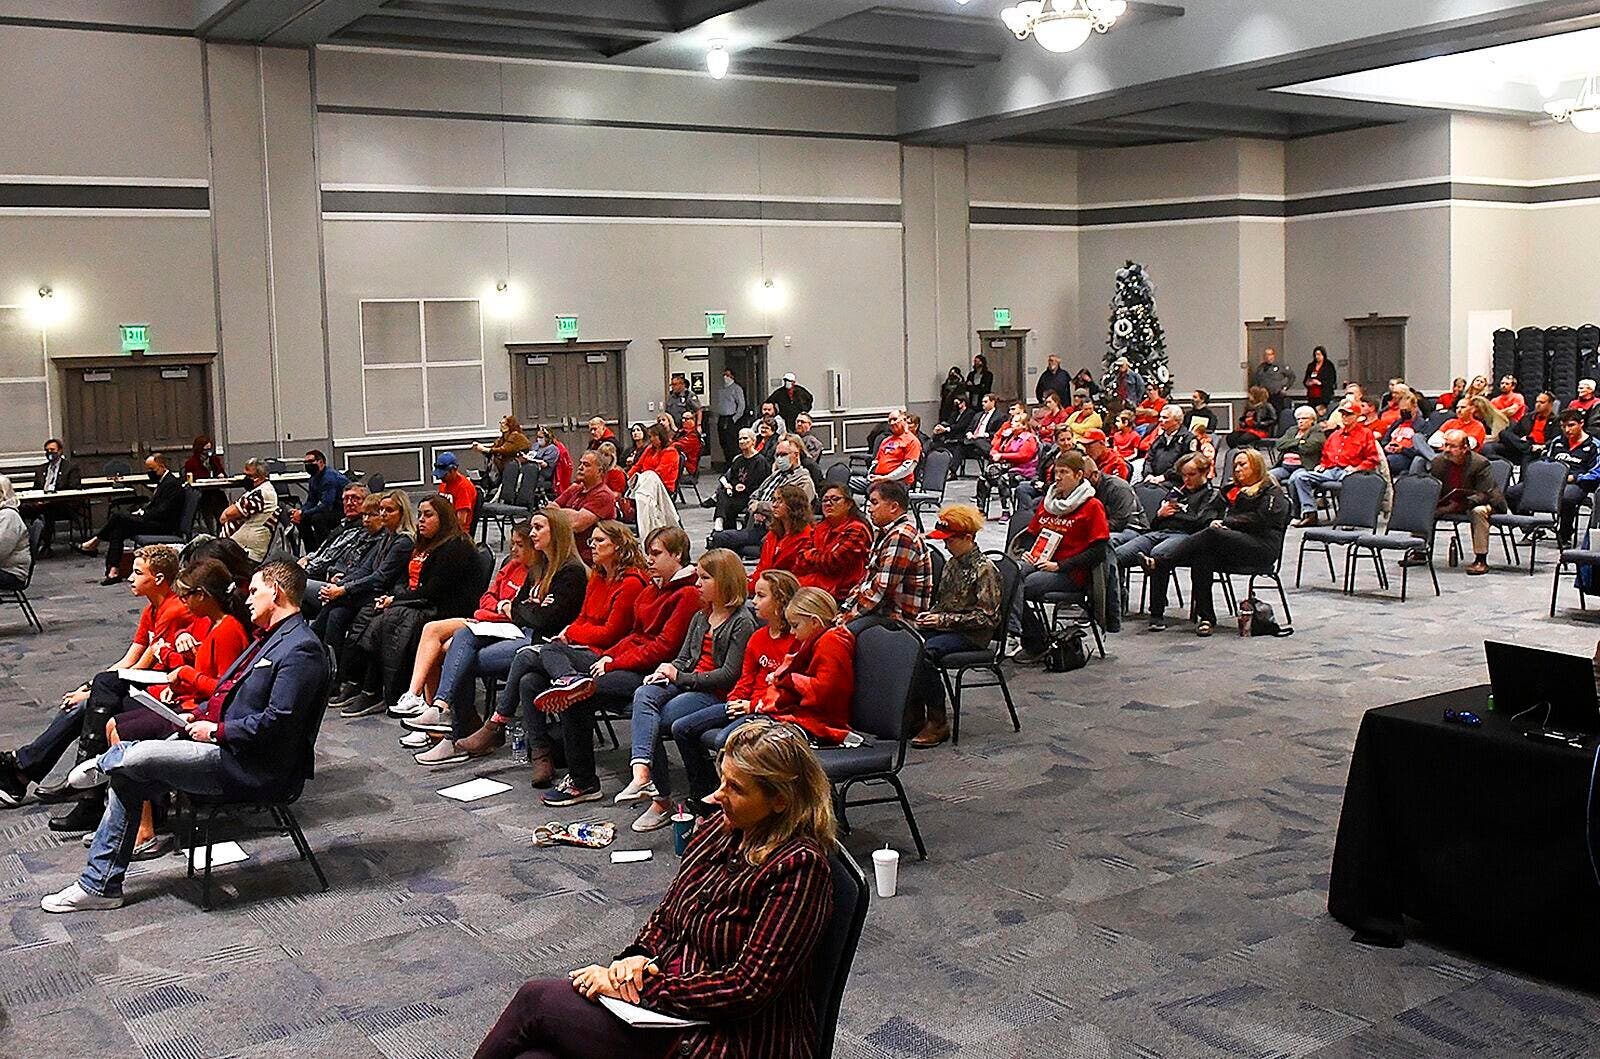 埃尼德市，统一穿着红色上衣参加市政会议的人群